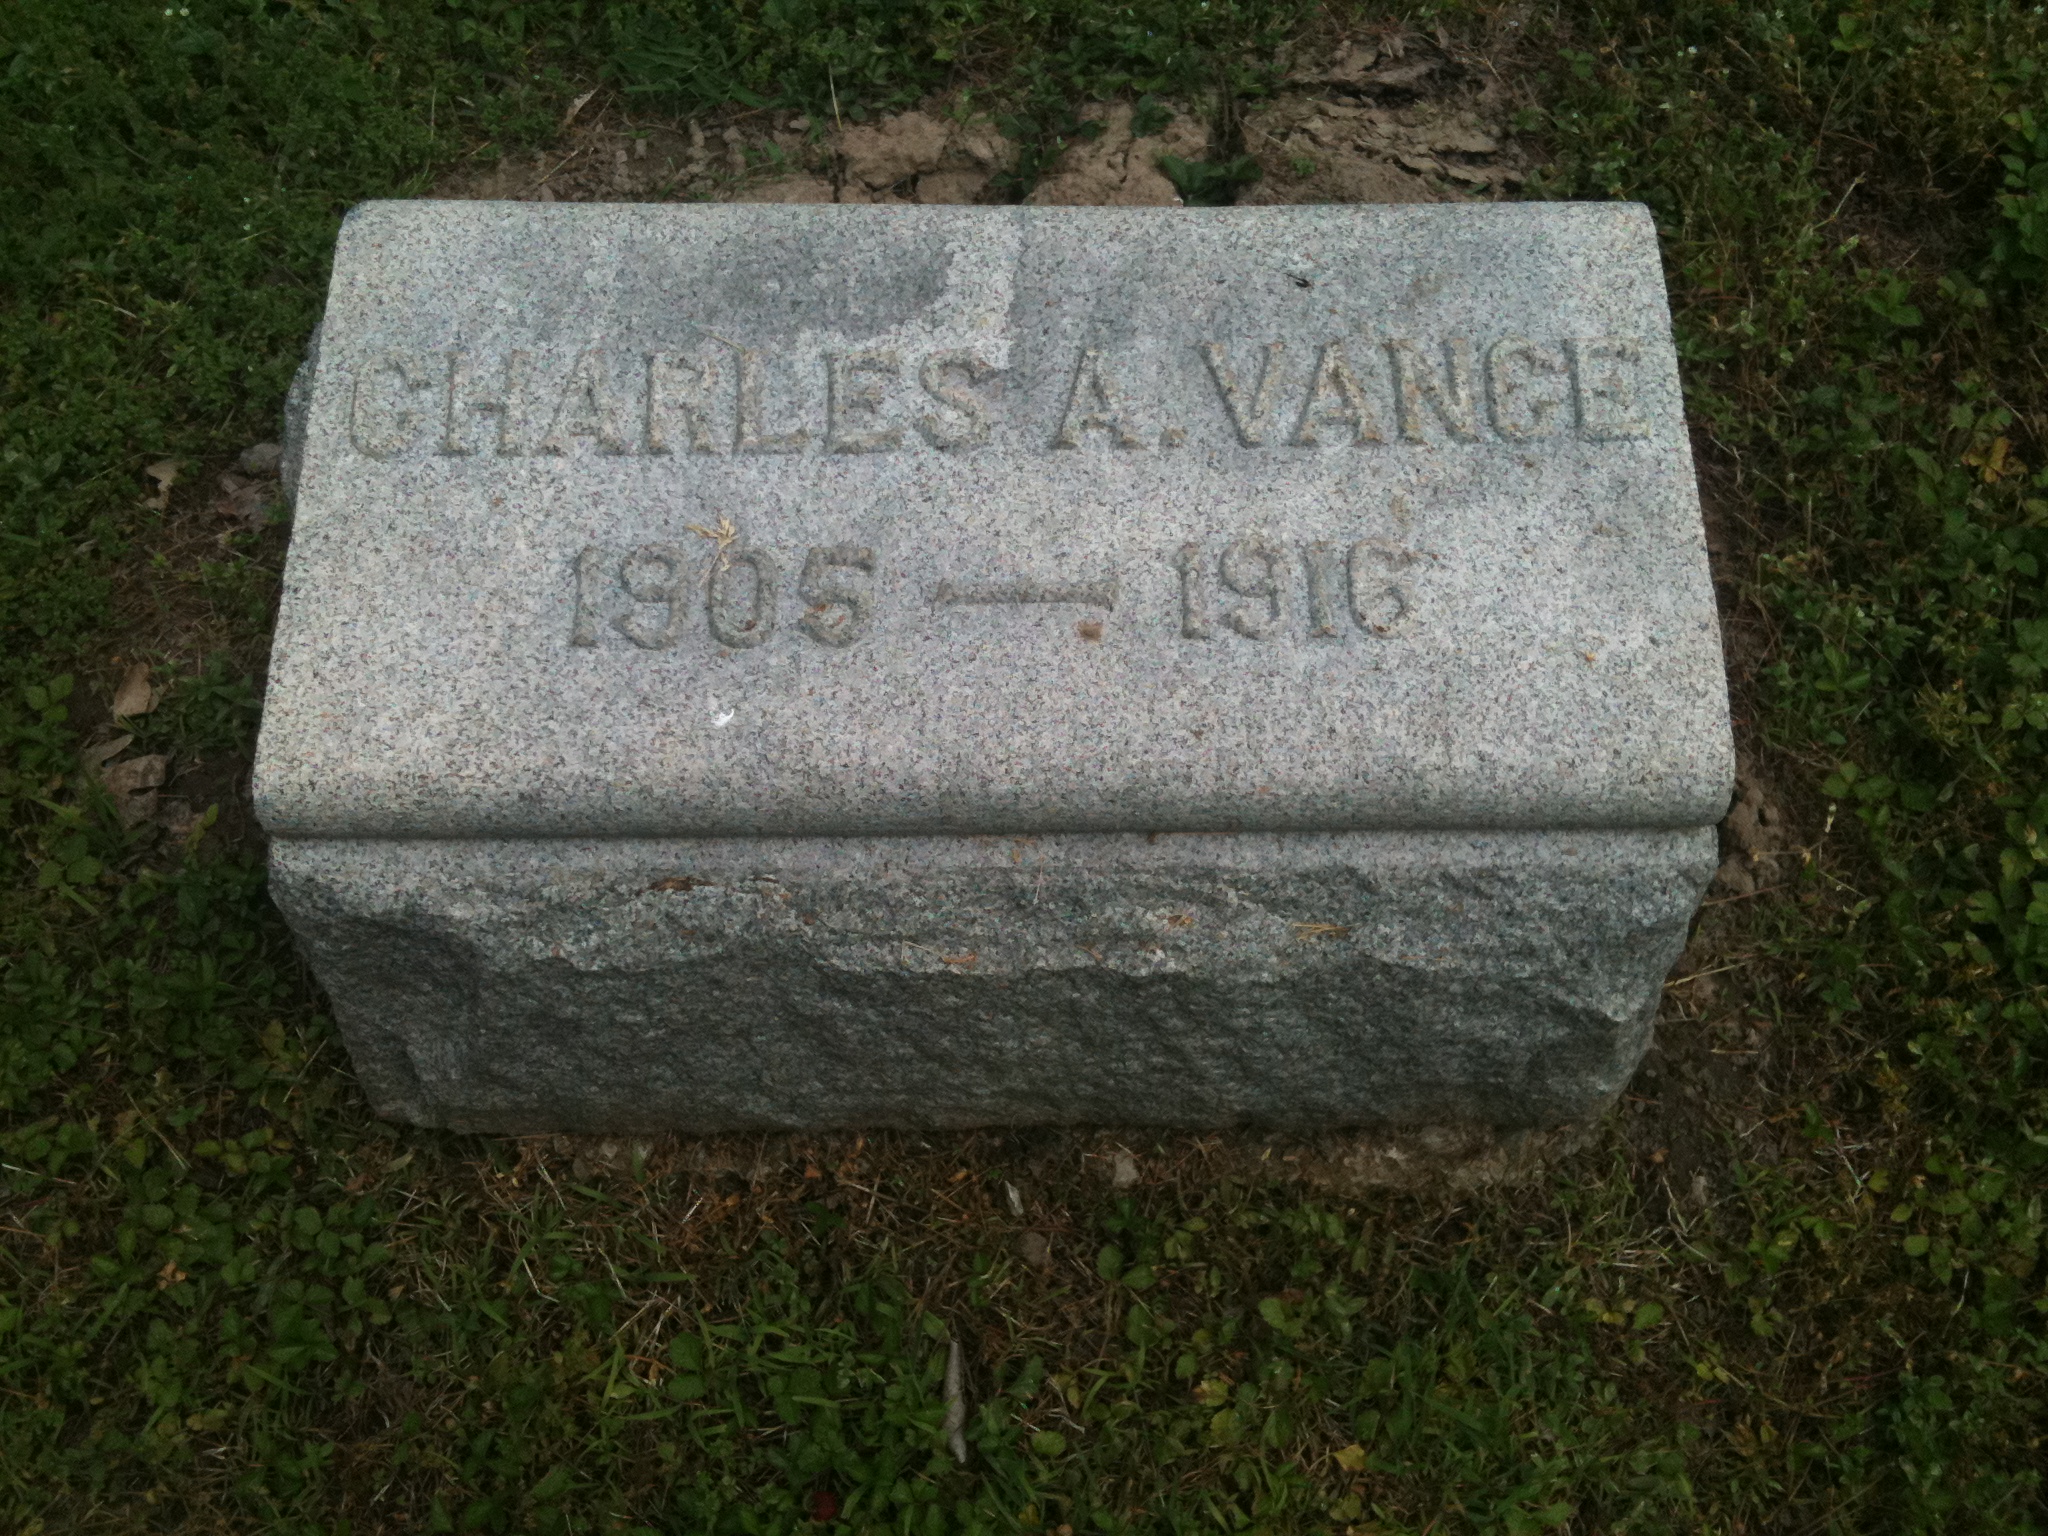 Charles A. Vance Headstone